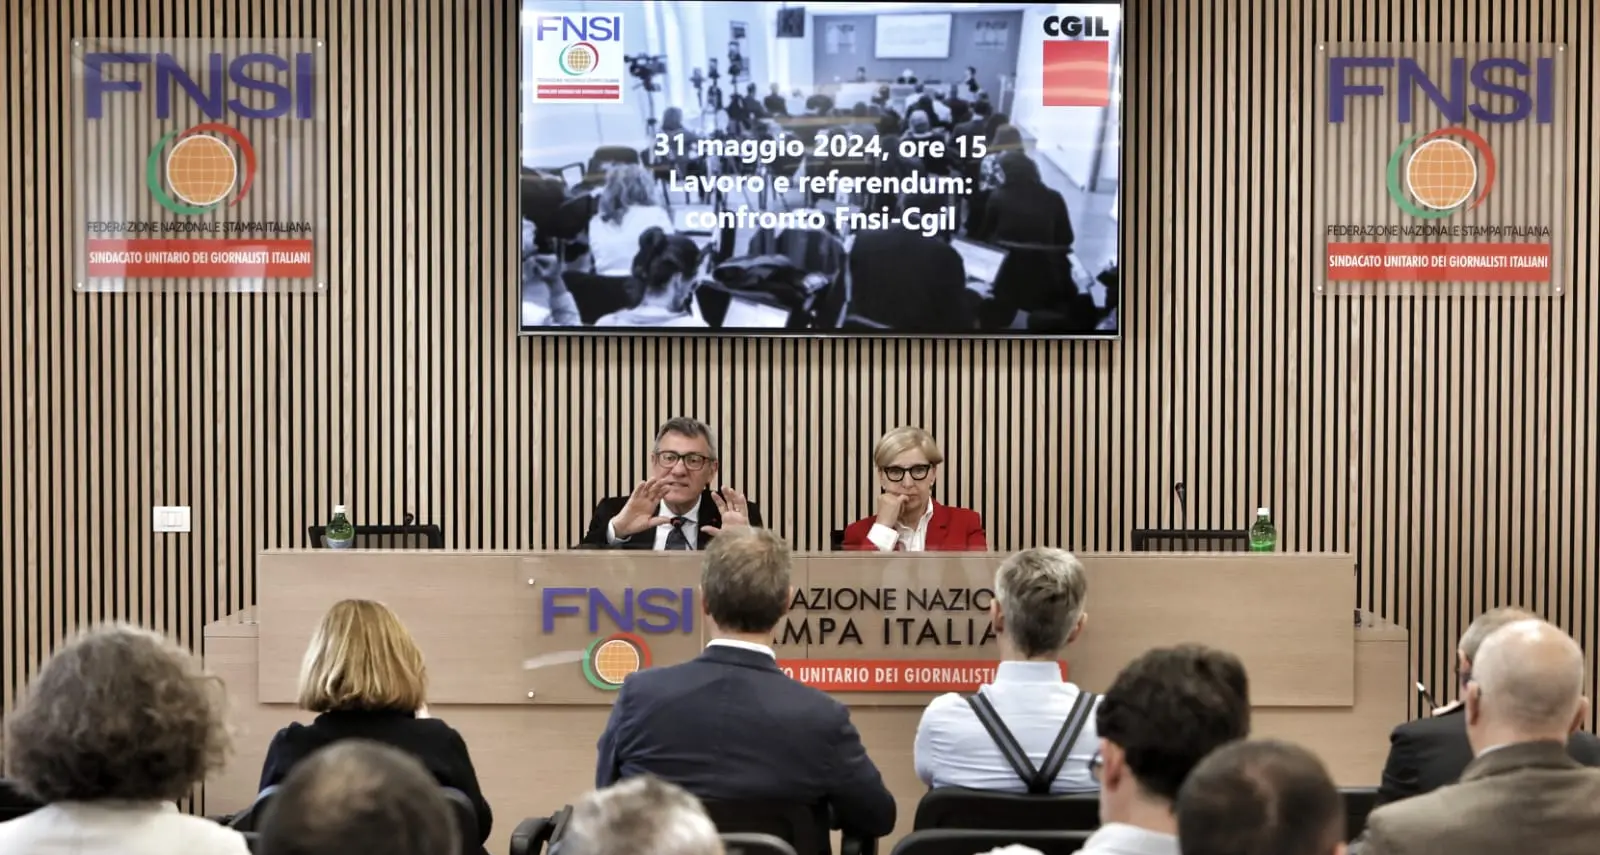 Lavoro e referendum, venerdì 31 maggio confronto in Fnsi con Maurizio Landini e Alessandra Costante